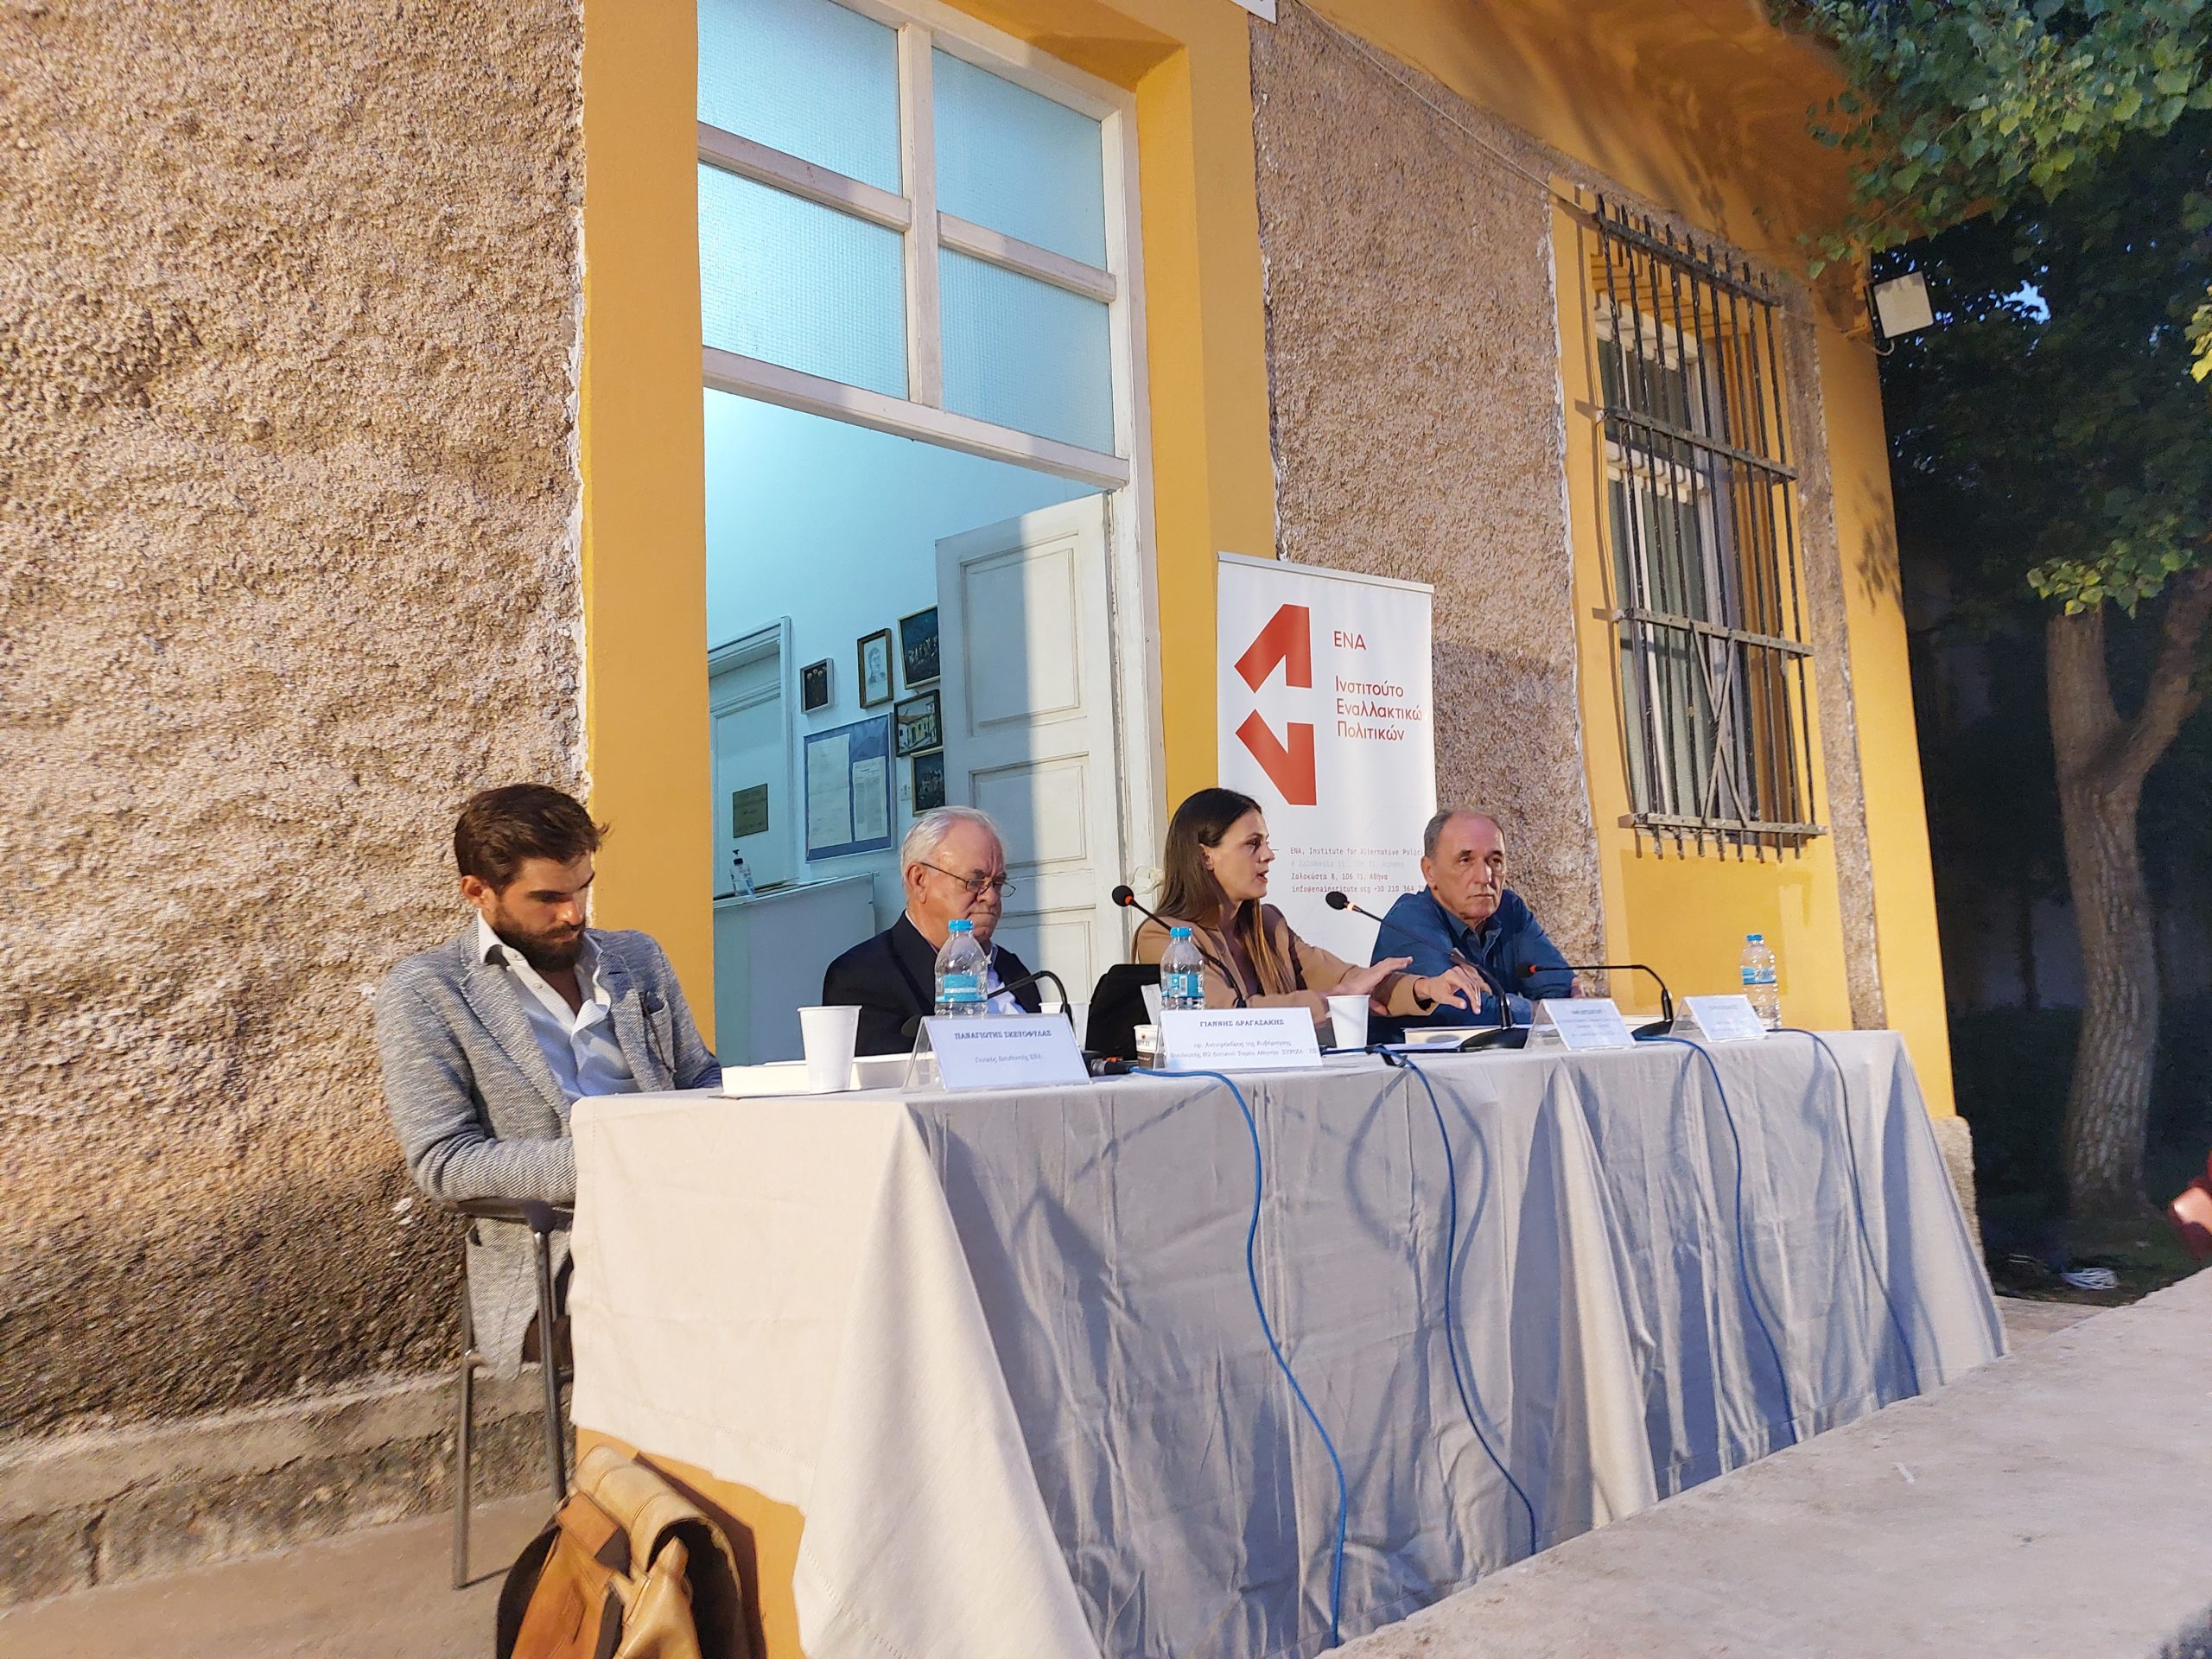 Εκδήλωση ΕΝΑ: Το τρίτο μνημόνιο είχε στόχο να μην εφαρμόσει ο ΣΥΡΙΖΑ το πρόγραμμά του, είπε ο Γιάννης Δραγασακης